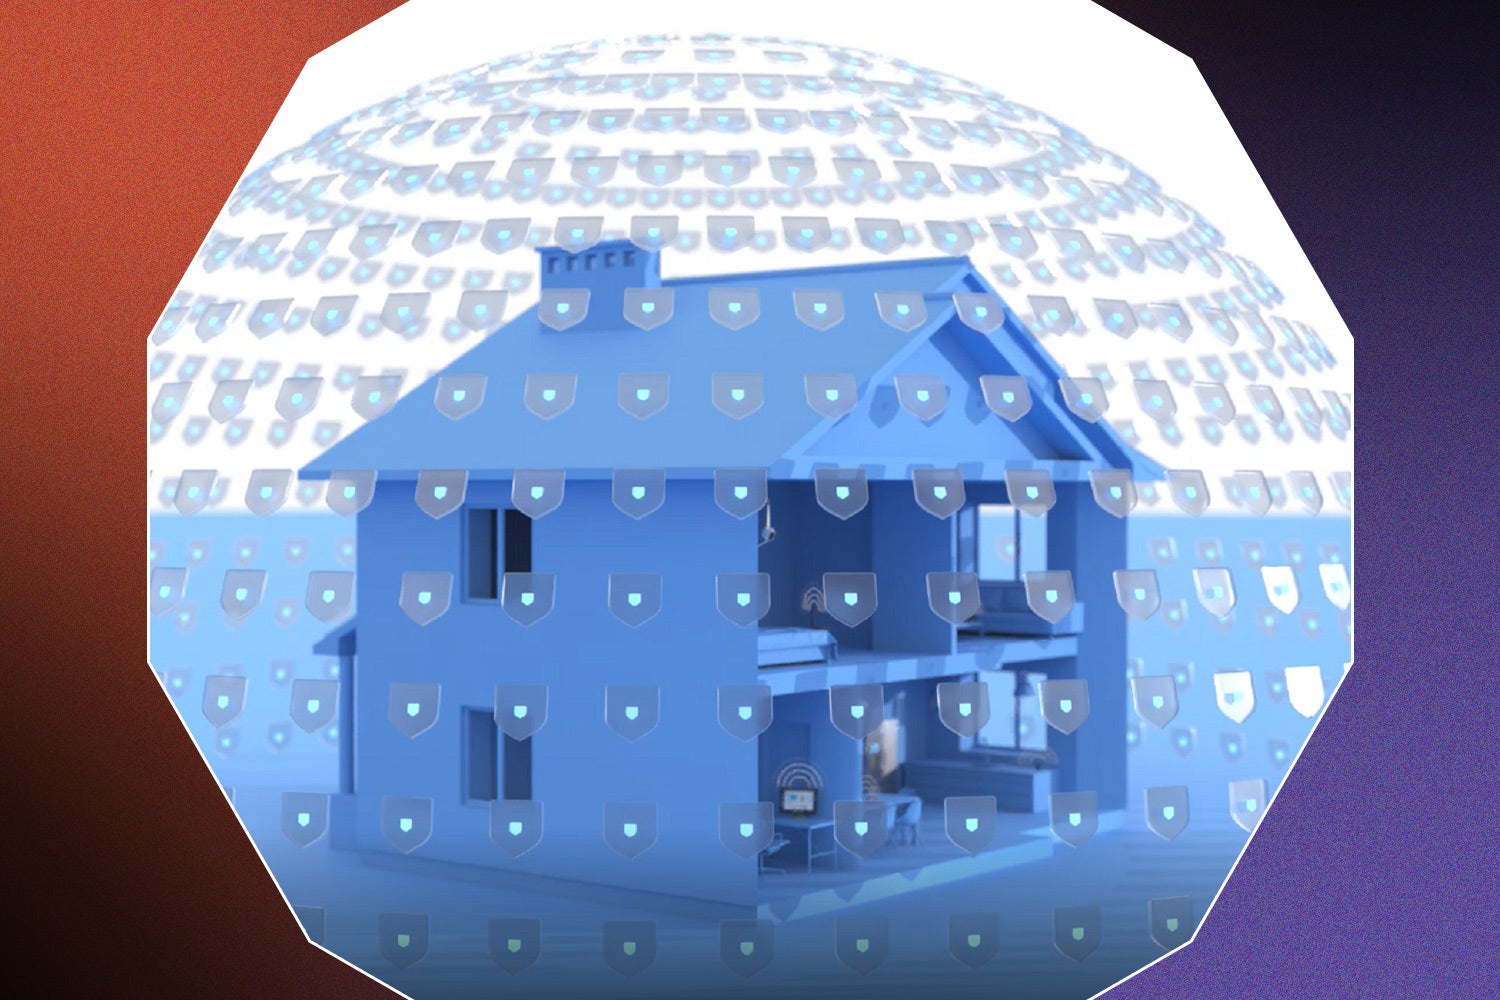 مدل خانه آبی با سیگنال‌های Wi-Fi در اطراف آن برای NETGEAR Amore که توسط Bitdefender در پس‌زمینه قرمز، مشکی و بنفش طراحی شده است.